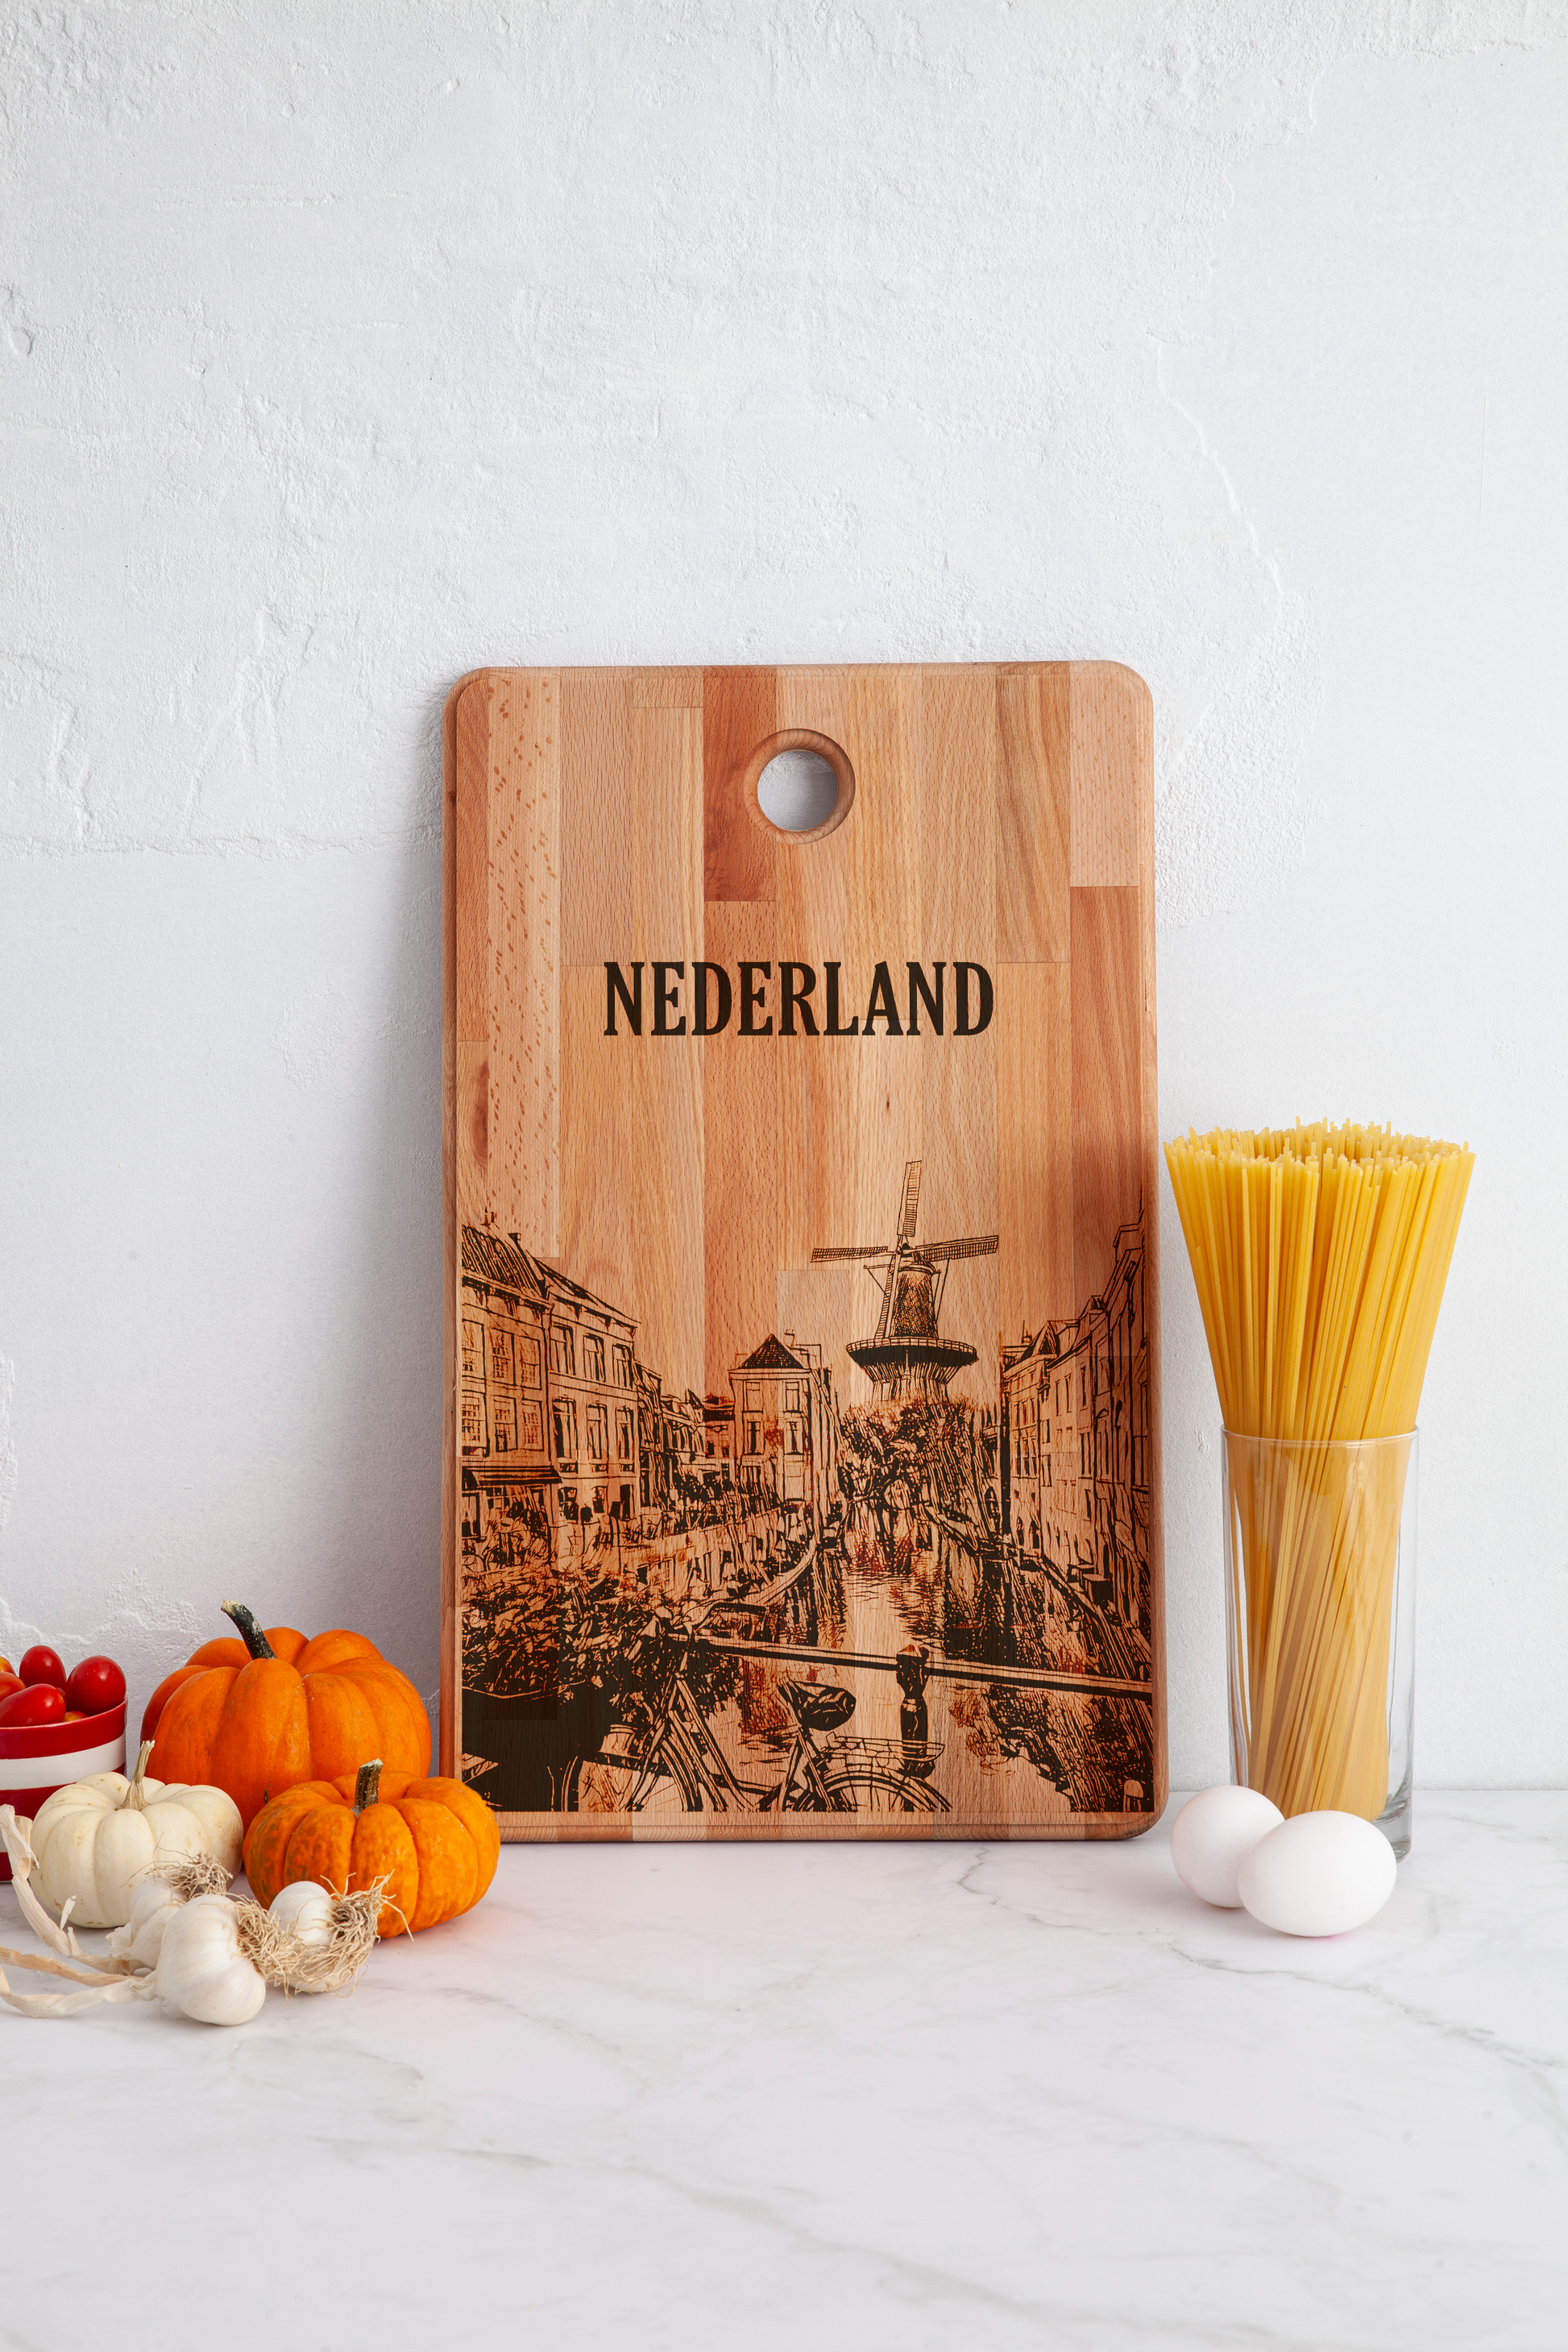 Nederland, City View, cutting board, in kitchen